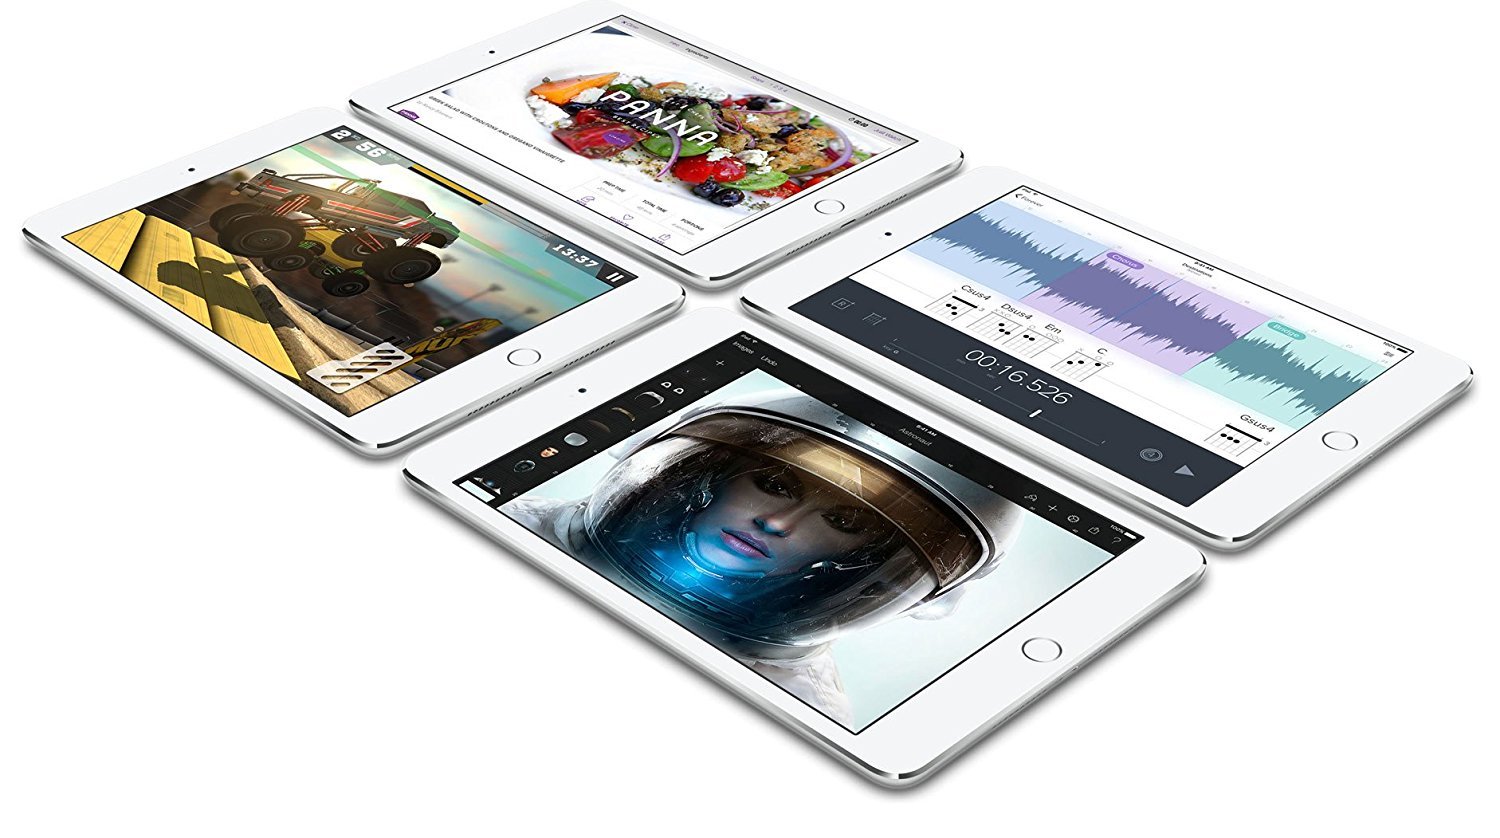 Apple iPad Mini 4 16gb Space Gray (Renewed)